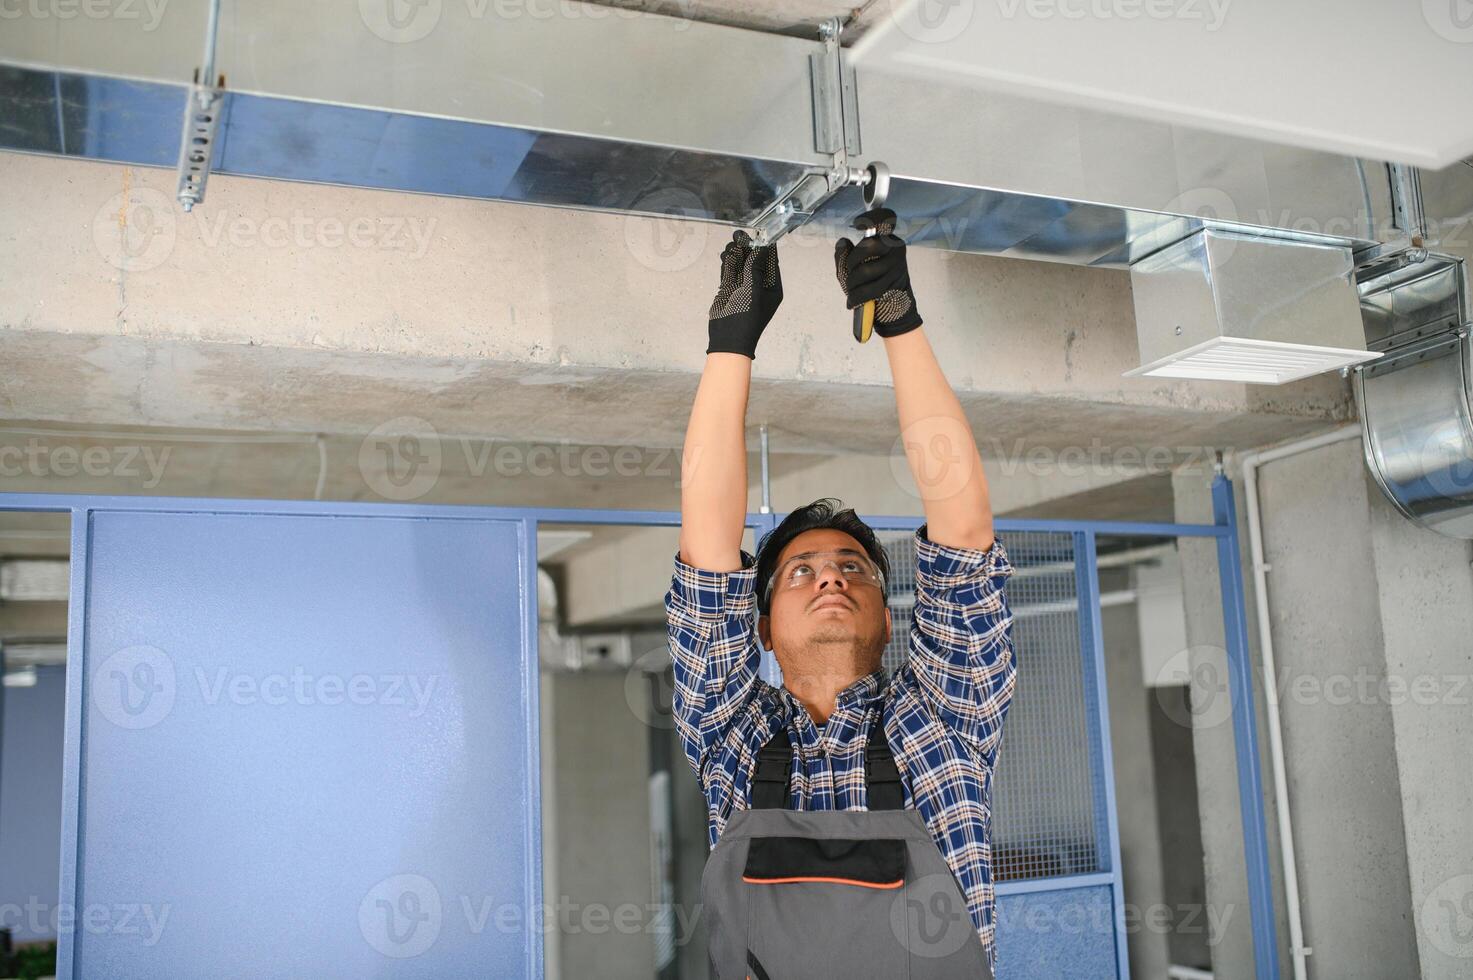 hvac indio trabajador Instalar en pc canalizado tubo sistema para ventilación y aire acondicionamiento. Copiar espacio foto